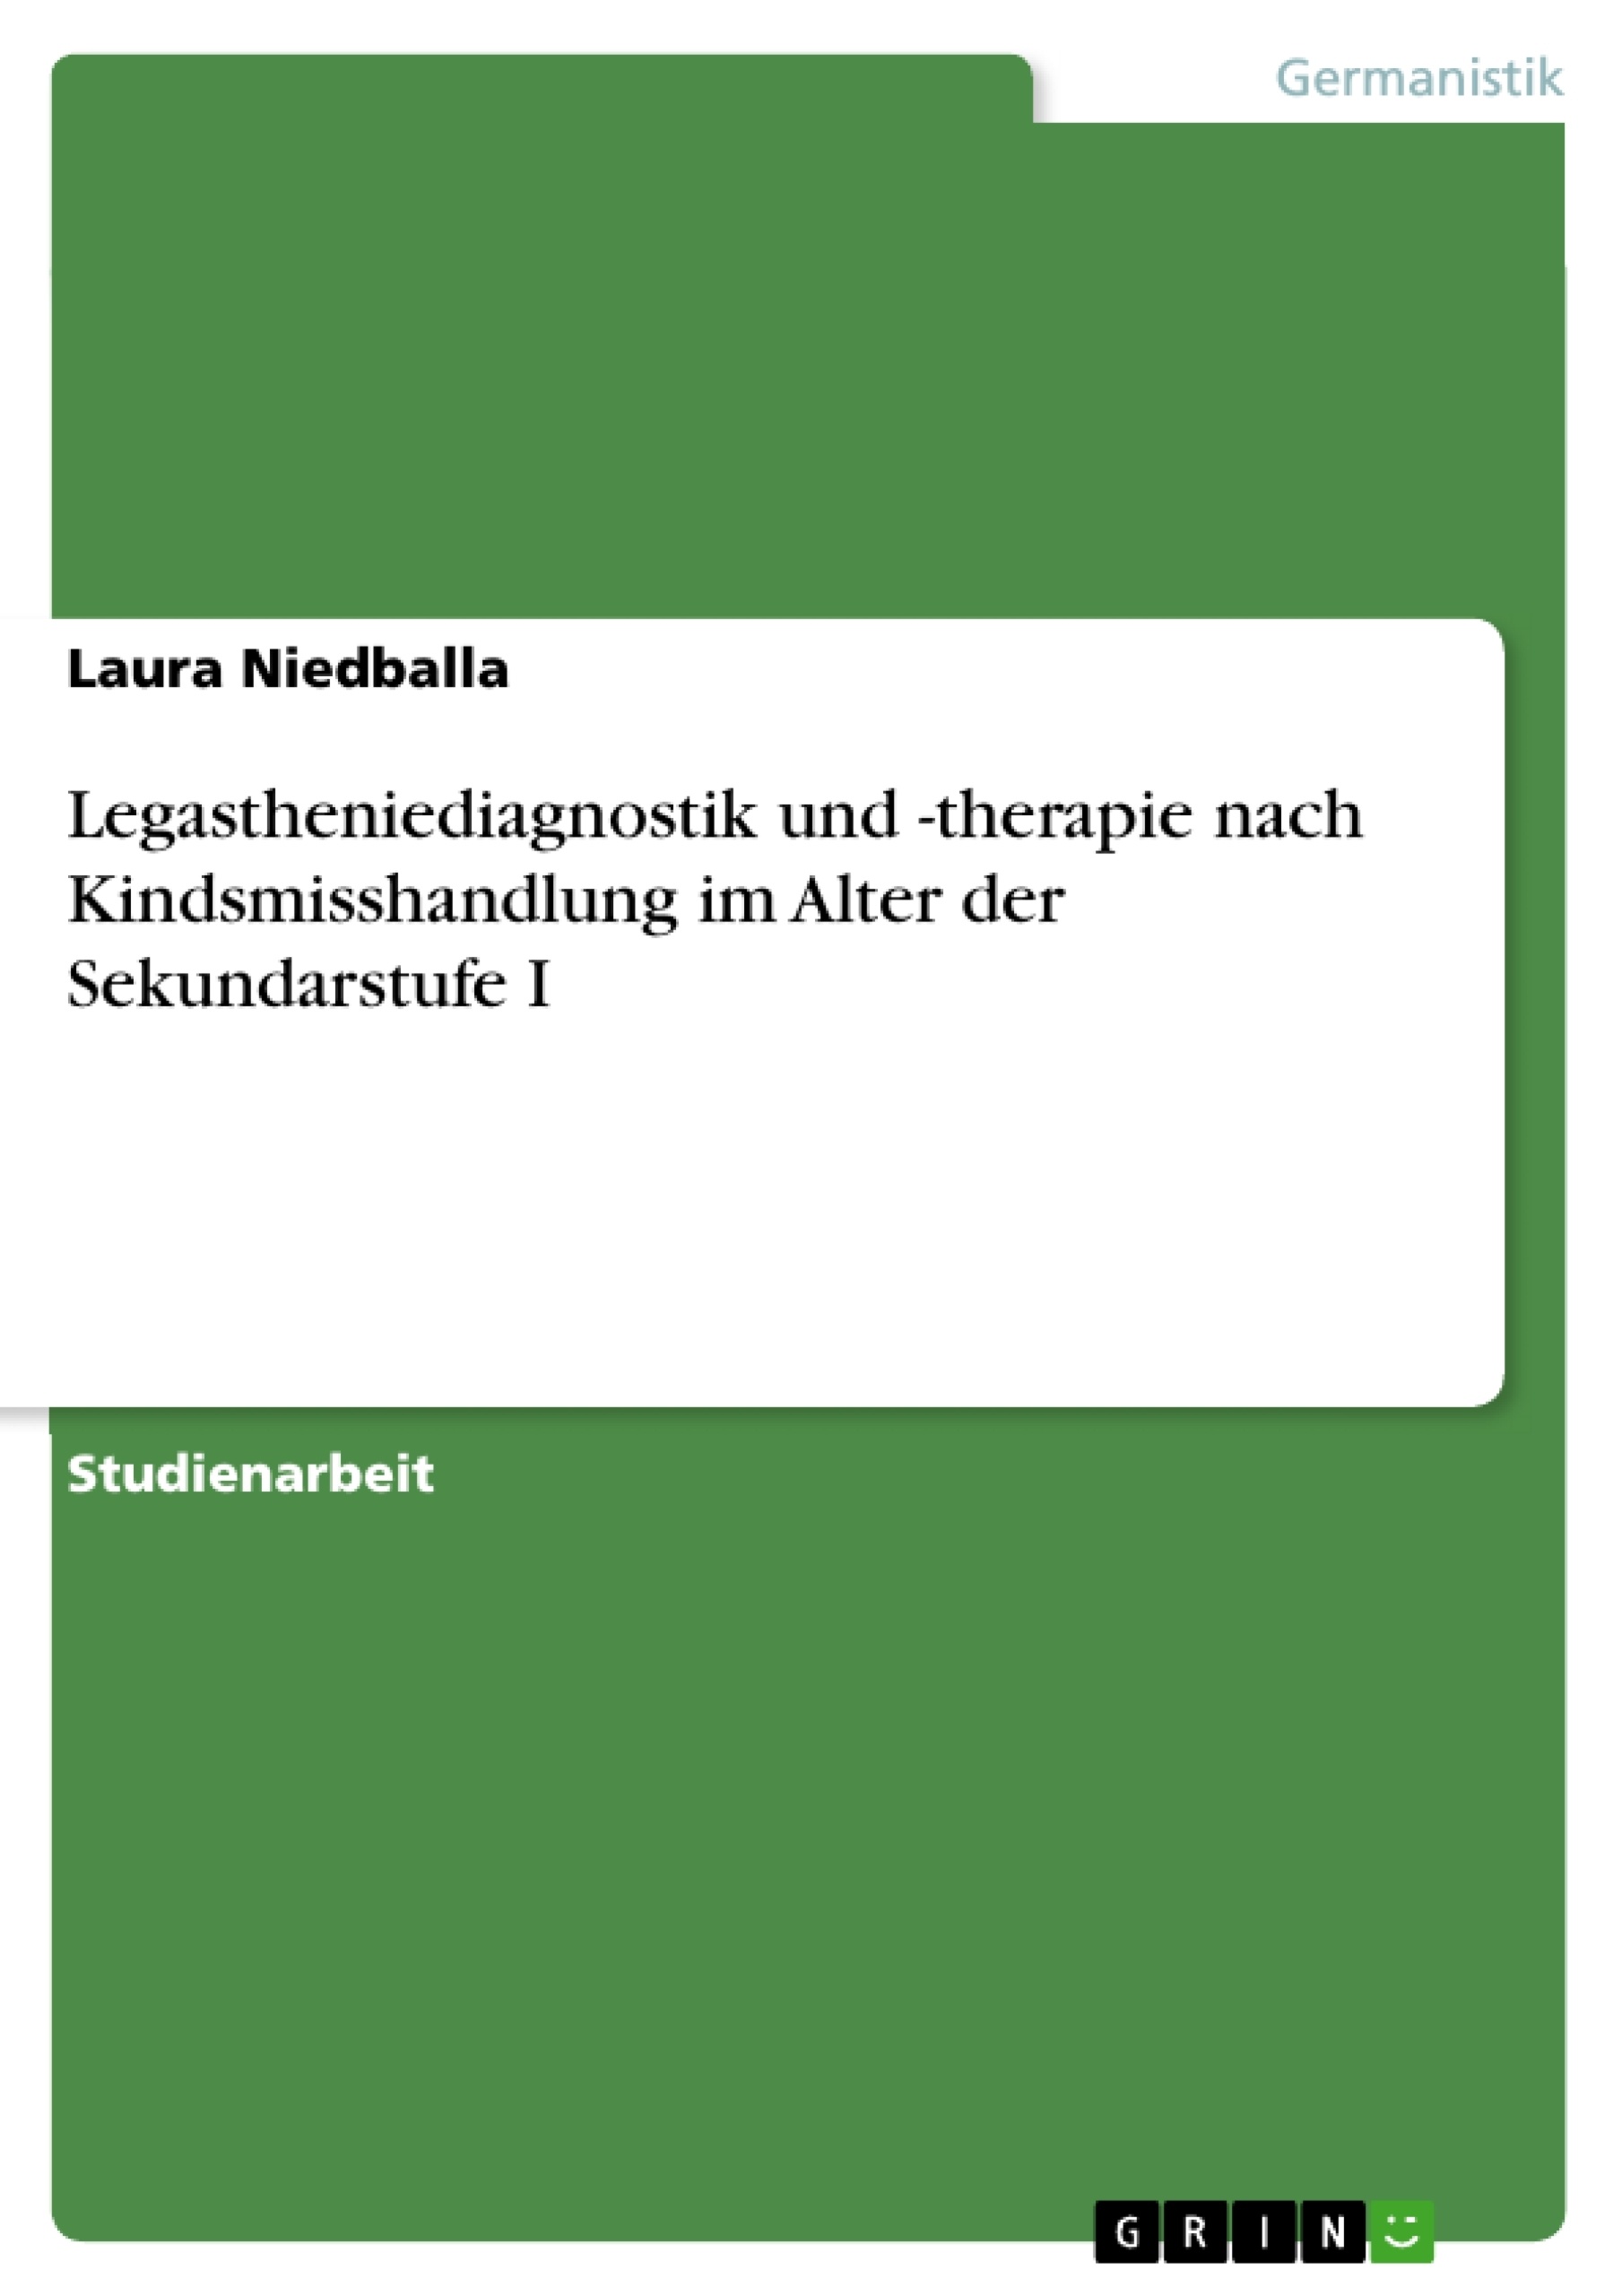 Titre: Legastheniediagnostik und -therapie nach Kindsmisshandlung im Alter der Sekundarstufe I